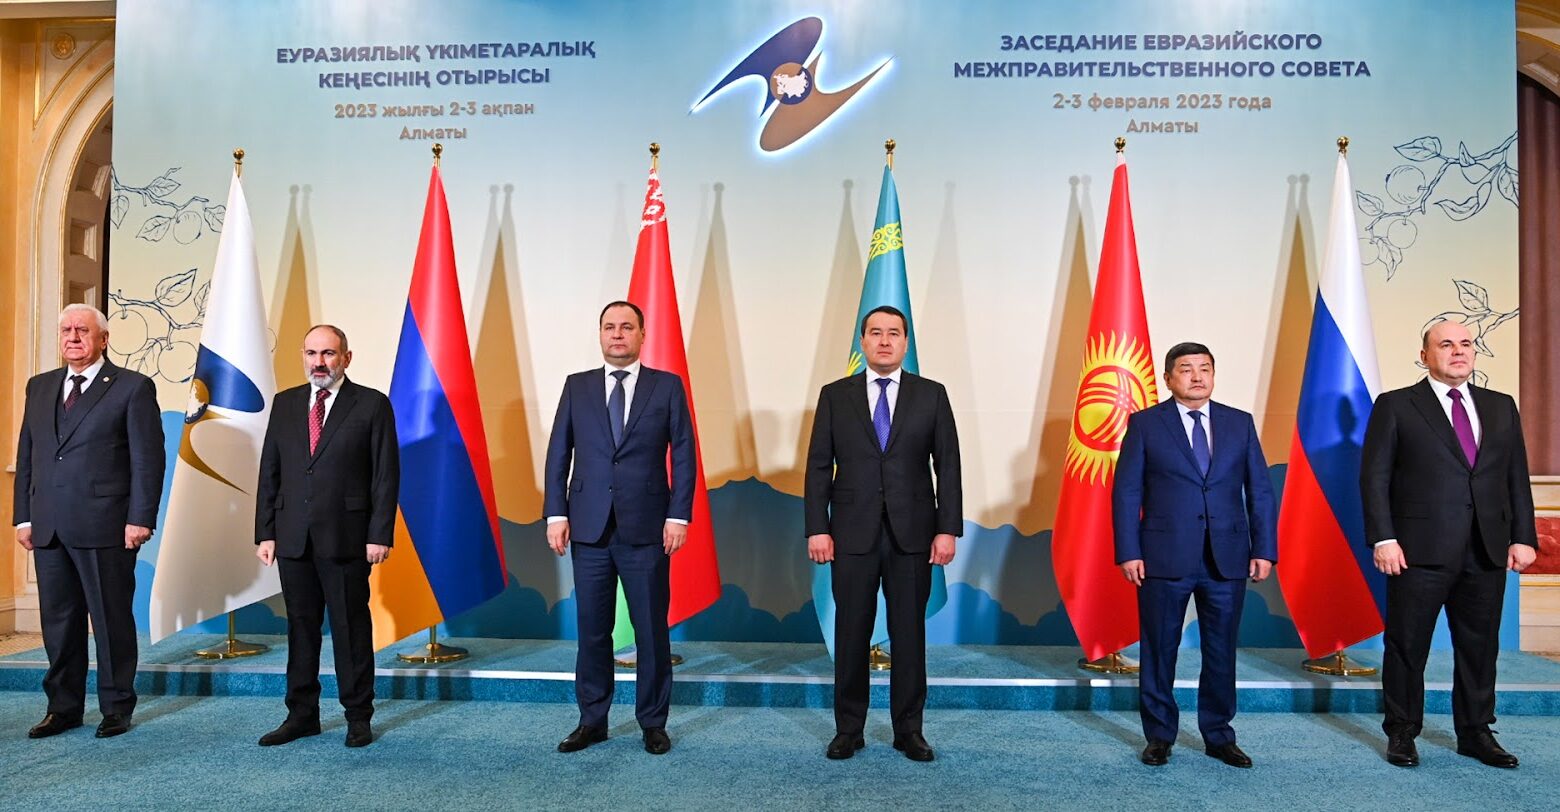 Главы правительств стран ЕАЭС обсудили в Алматы устранение цифровых барьеров и технологические тренды - Bizmedia.kz